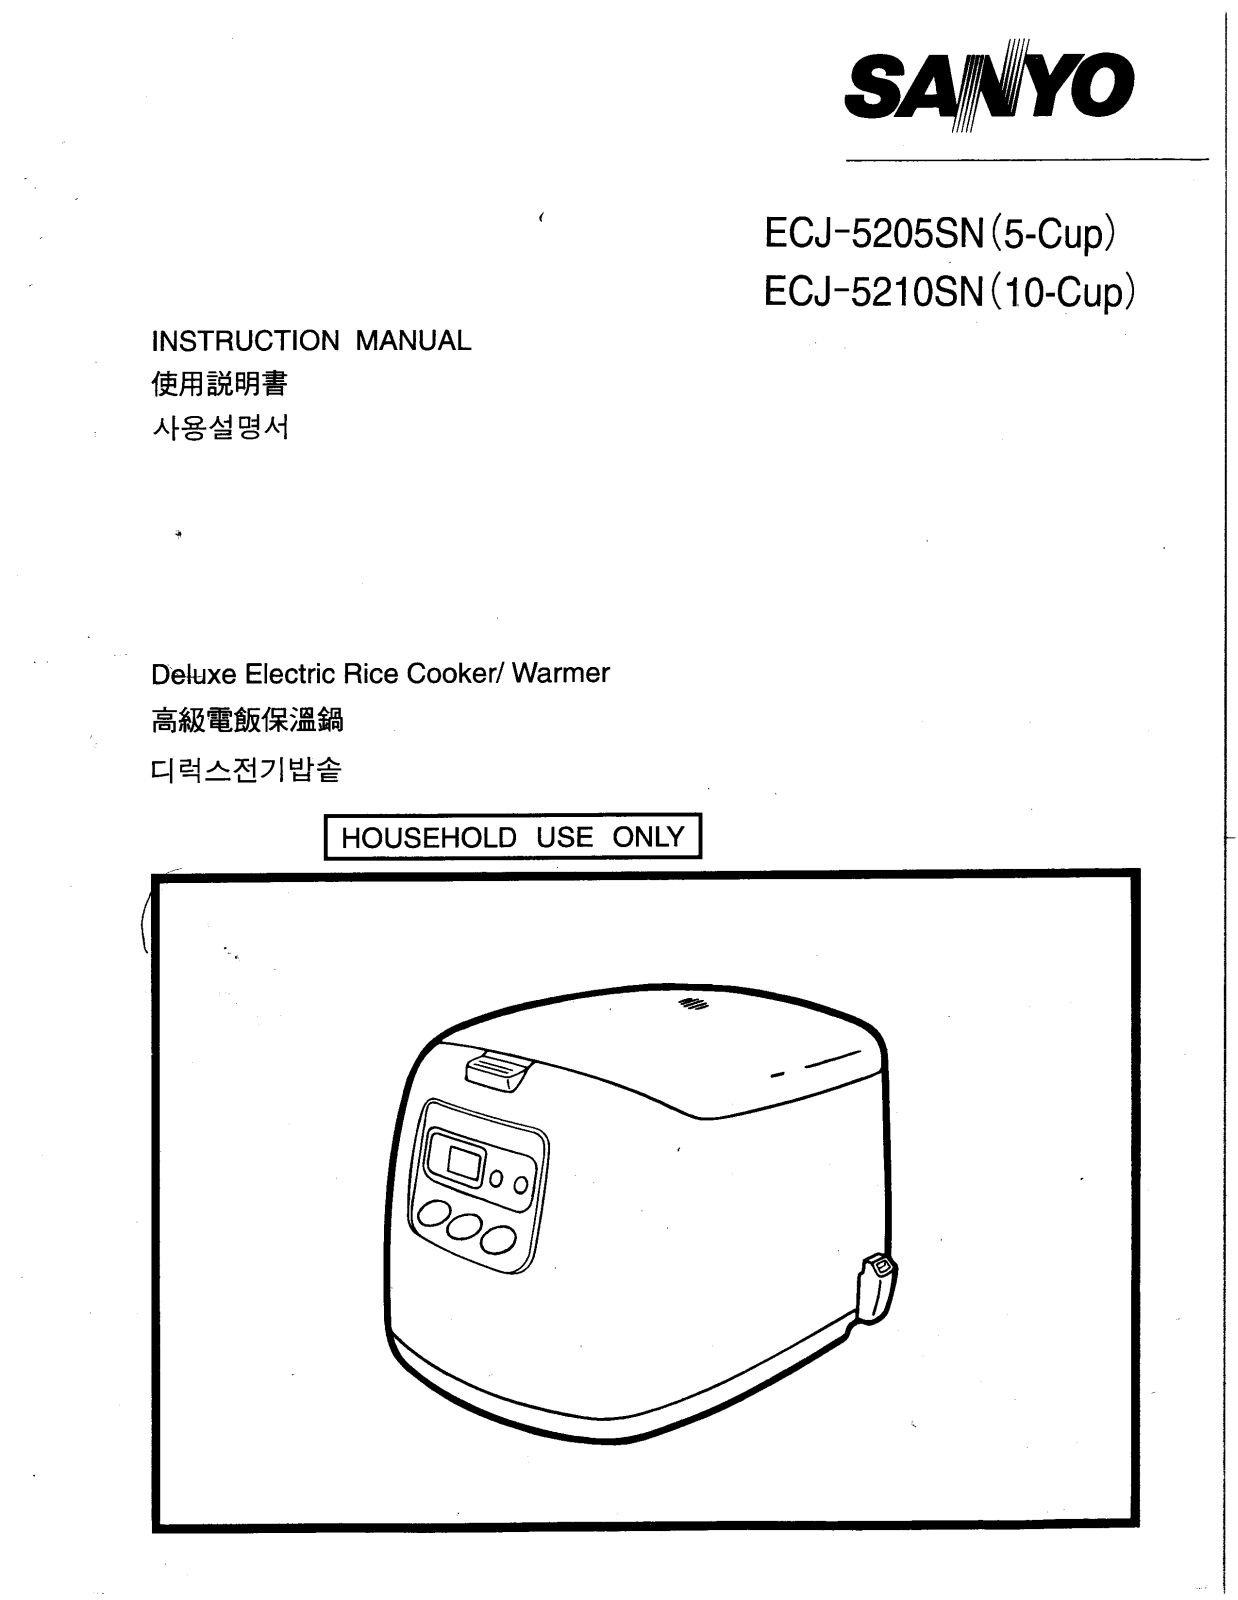 Sanyo ECJ-5205SN, ECJ-5210SN User Manual